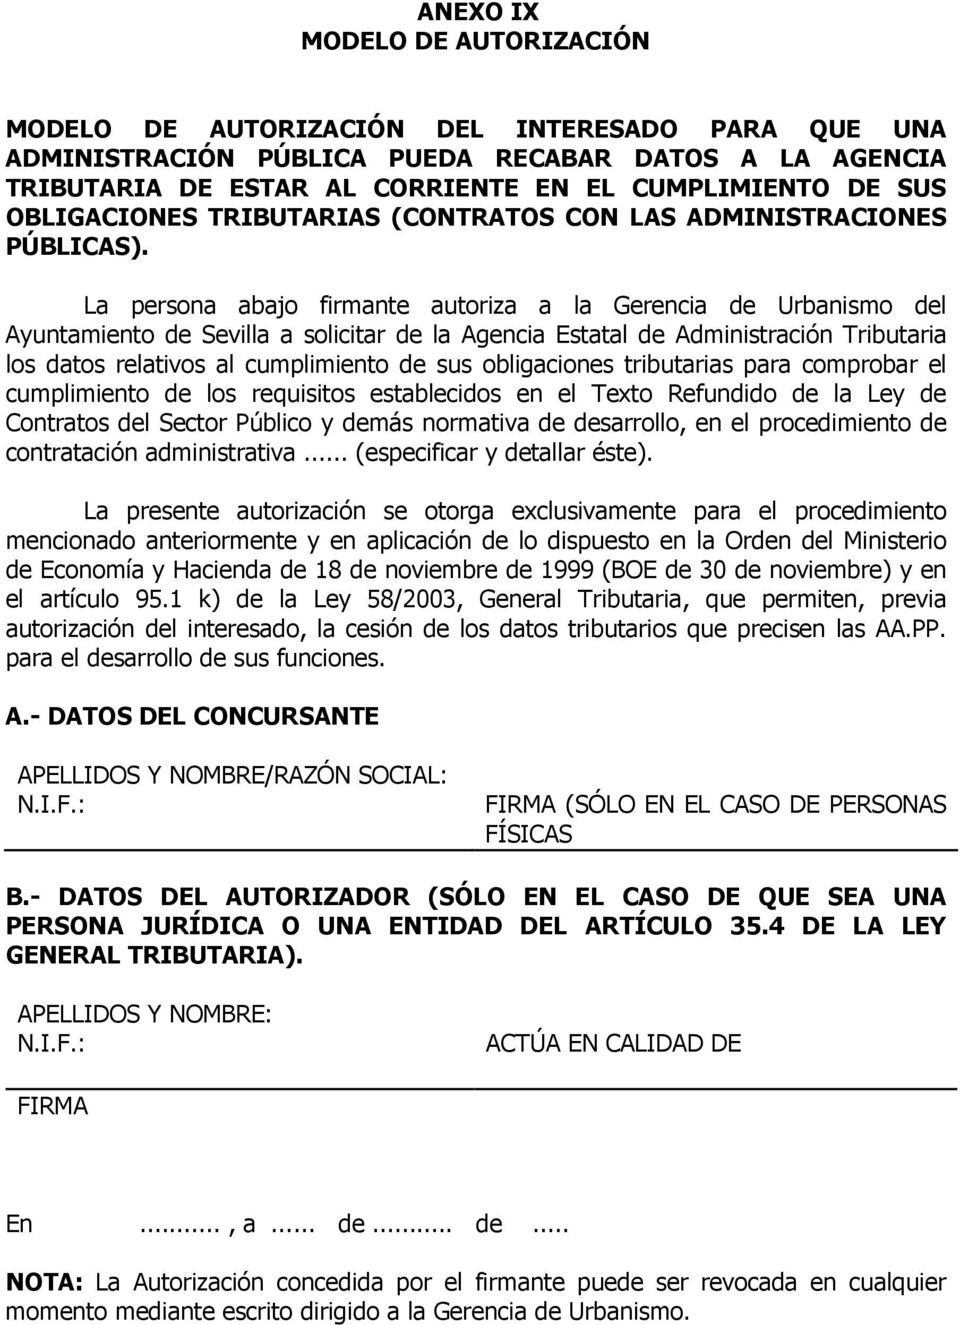 La persona abajo firmante autoriza a la Gerencia de Urbanismo del Ayuntamiento de Sevilla a solicitar de la Agencia Estatal de Administración Tributaria los datos relativos al cumplimiento de sus